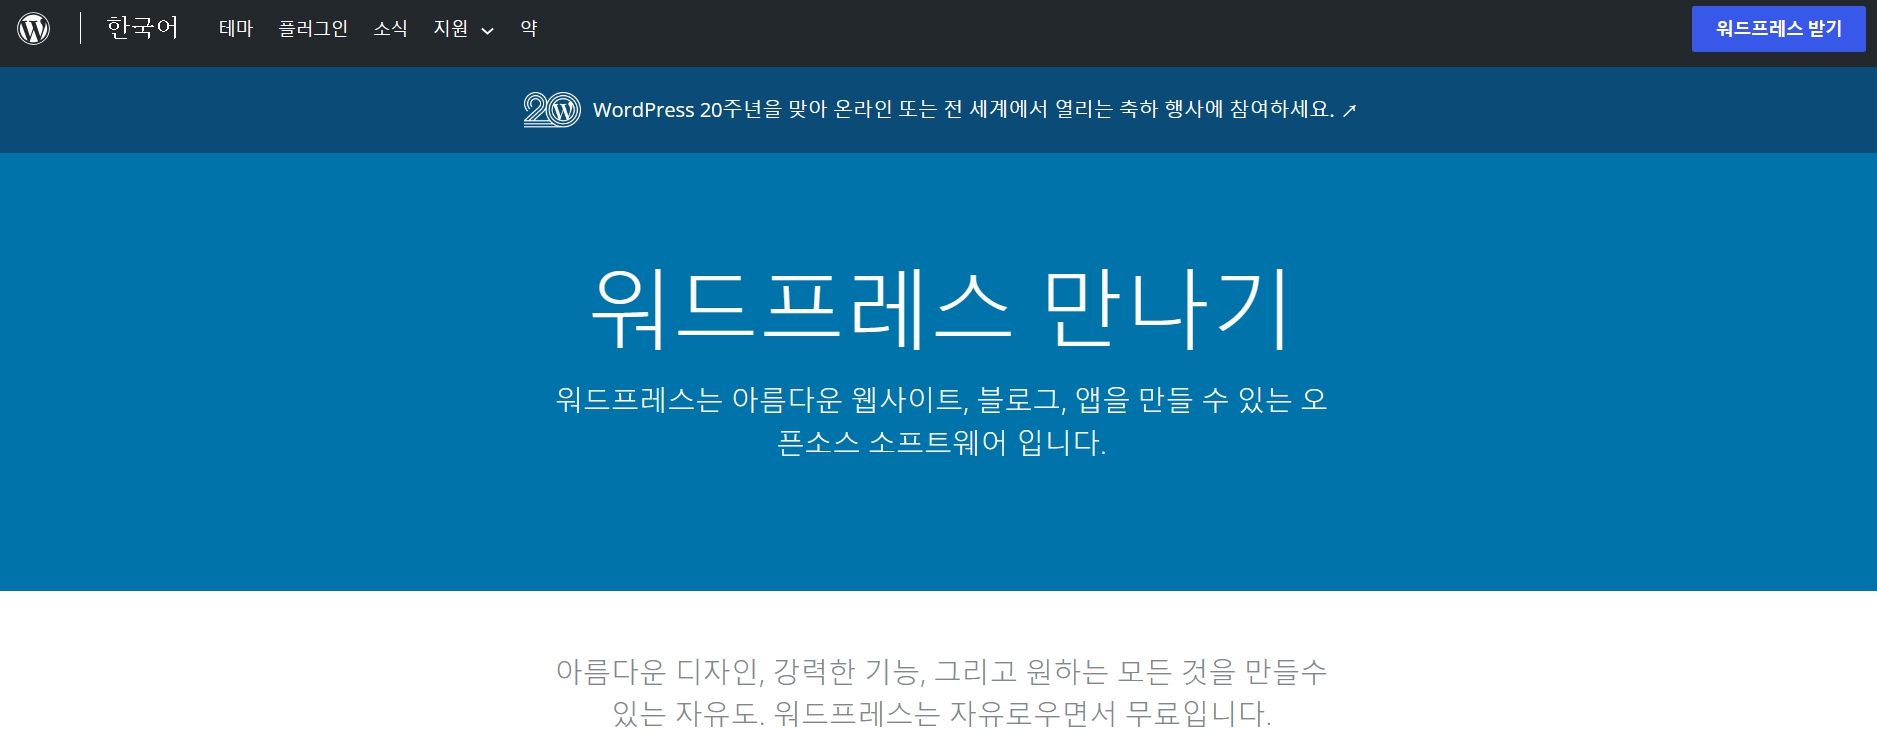 워드프레스 사이트 메인 - 한국어 버전